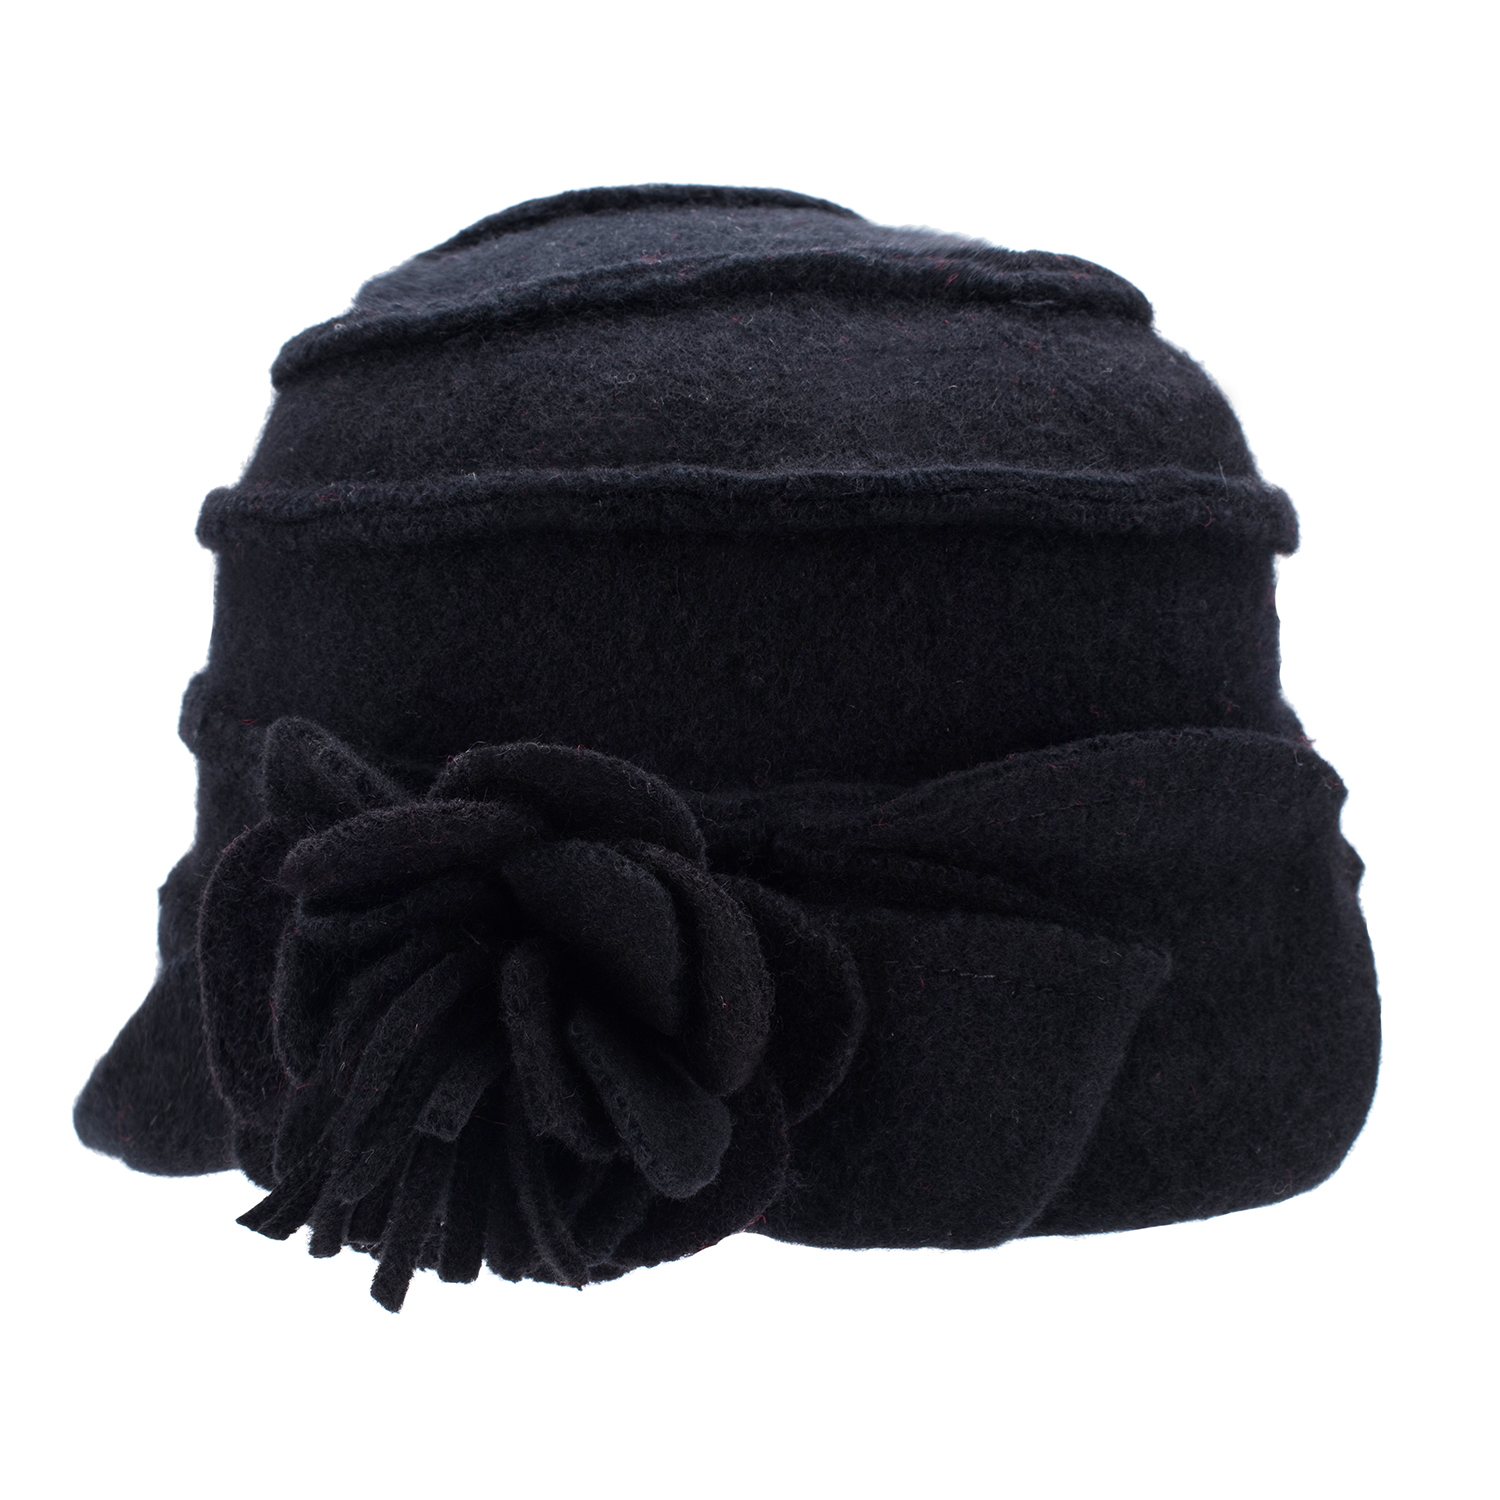 Elegante dameshoeden uit de jaren 1920 Winter Beret Beanie Hats For Women Embet Cloche Cap 100% Kook Wool Warm Hats A376